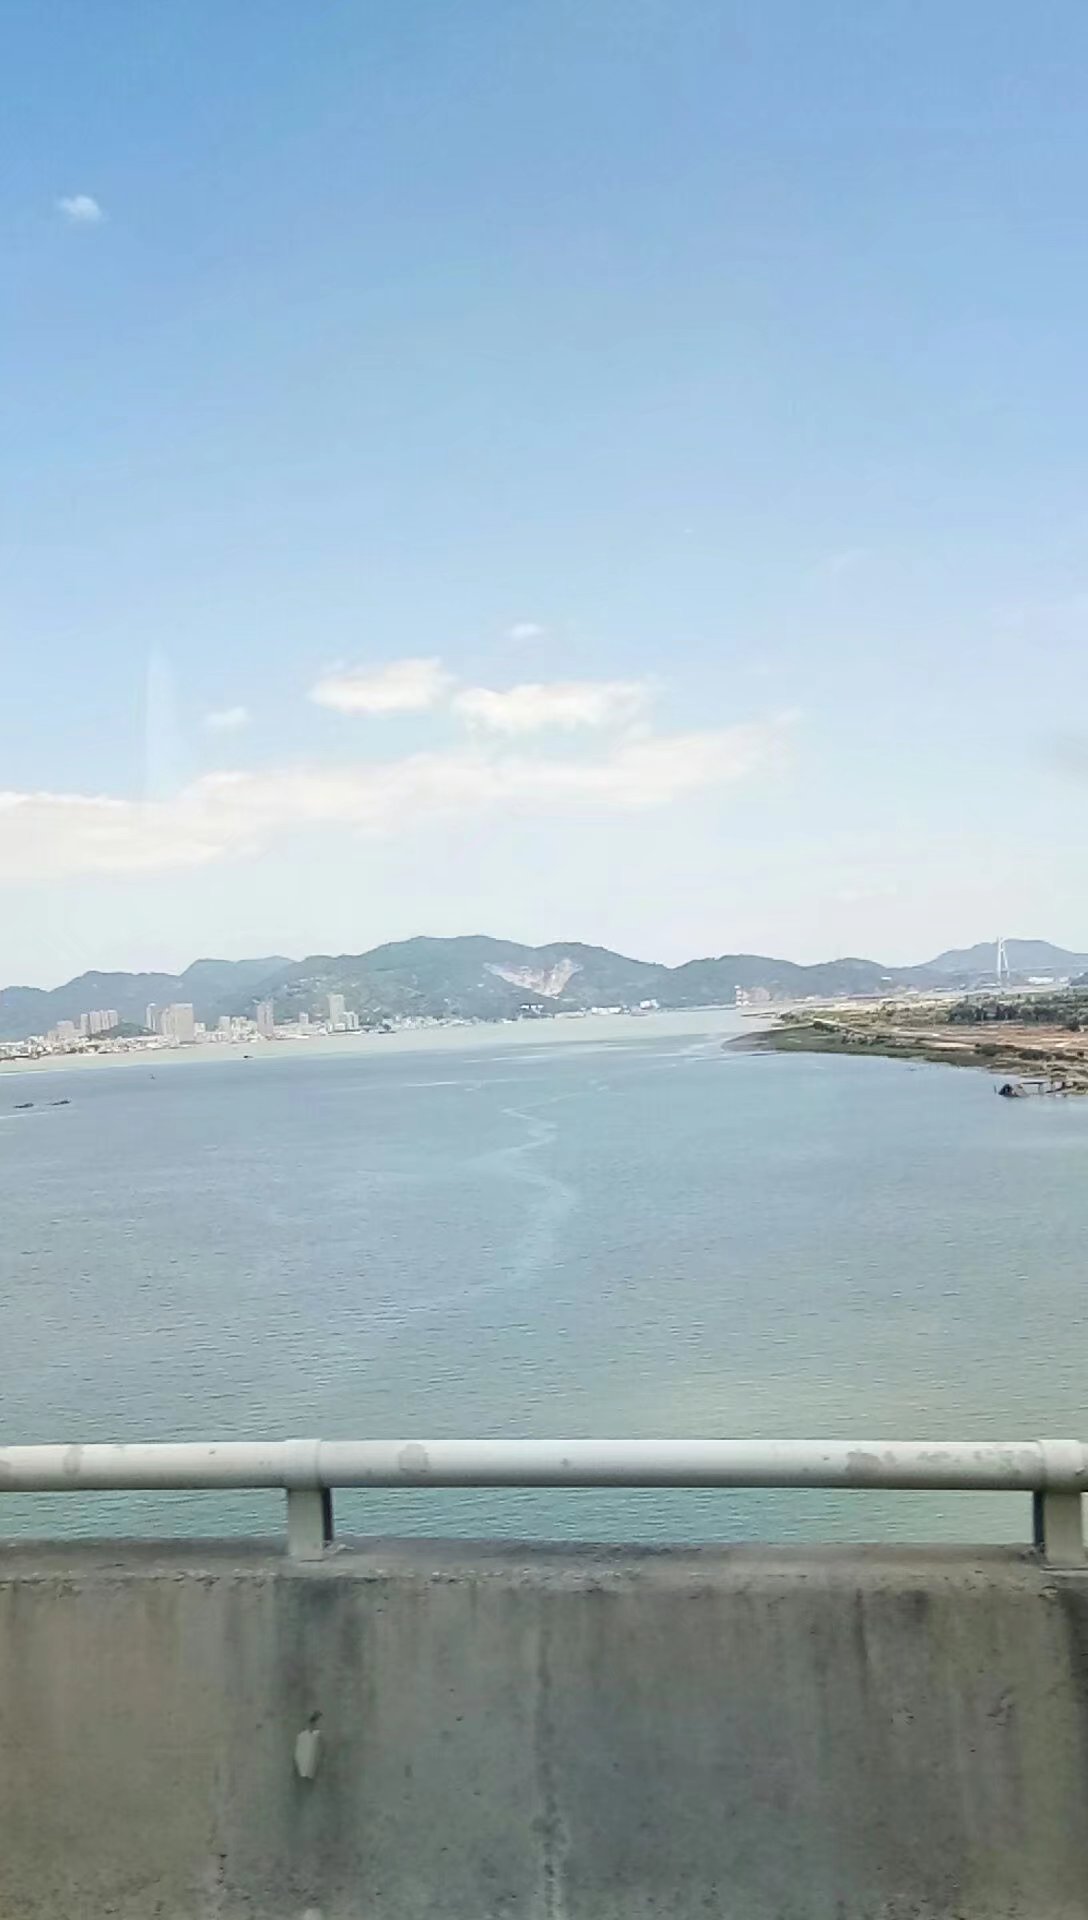 琅岐大桥图片